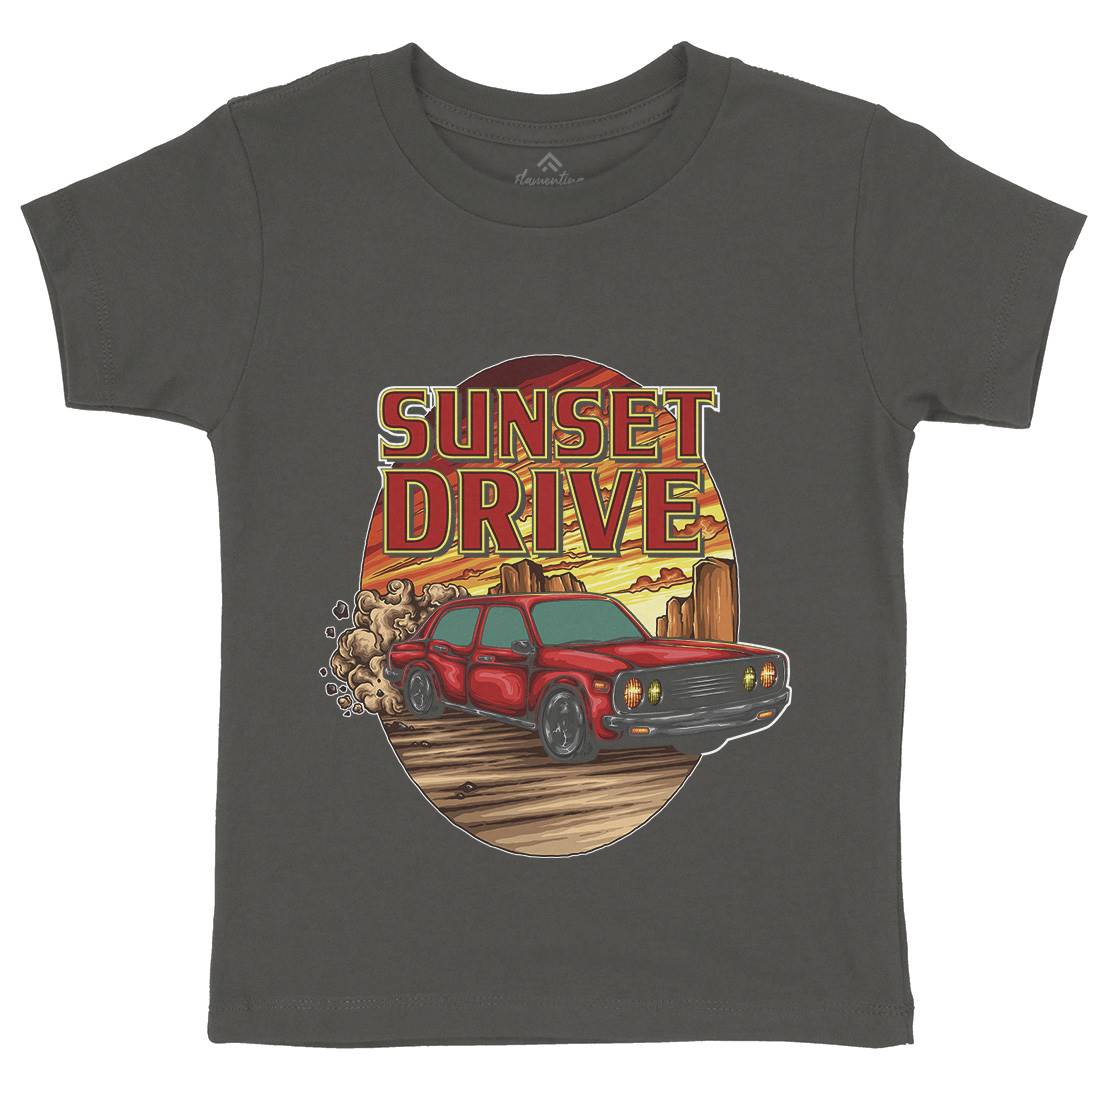 Sunset Drive Kids Crew Neck T-Shirt Cars A472